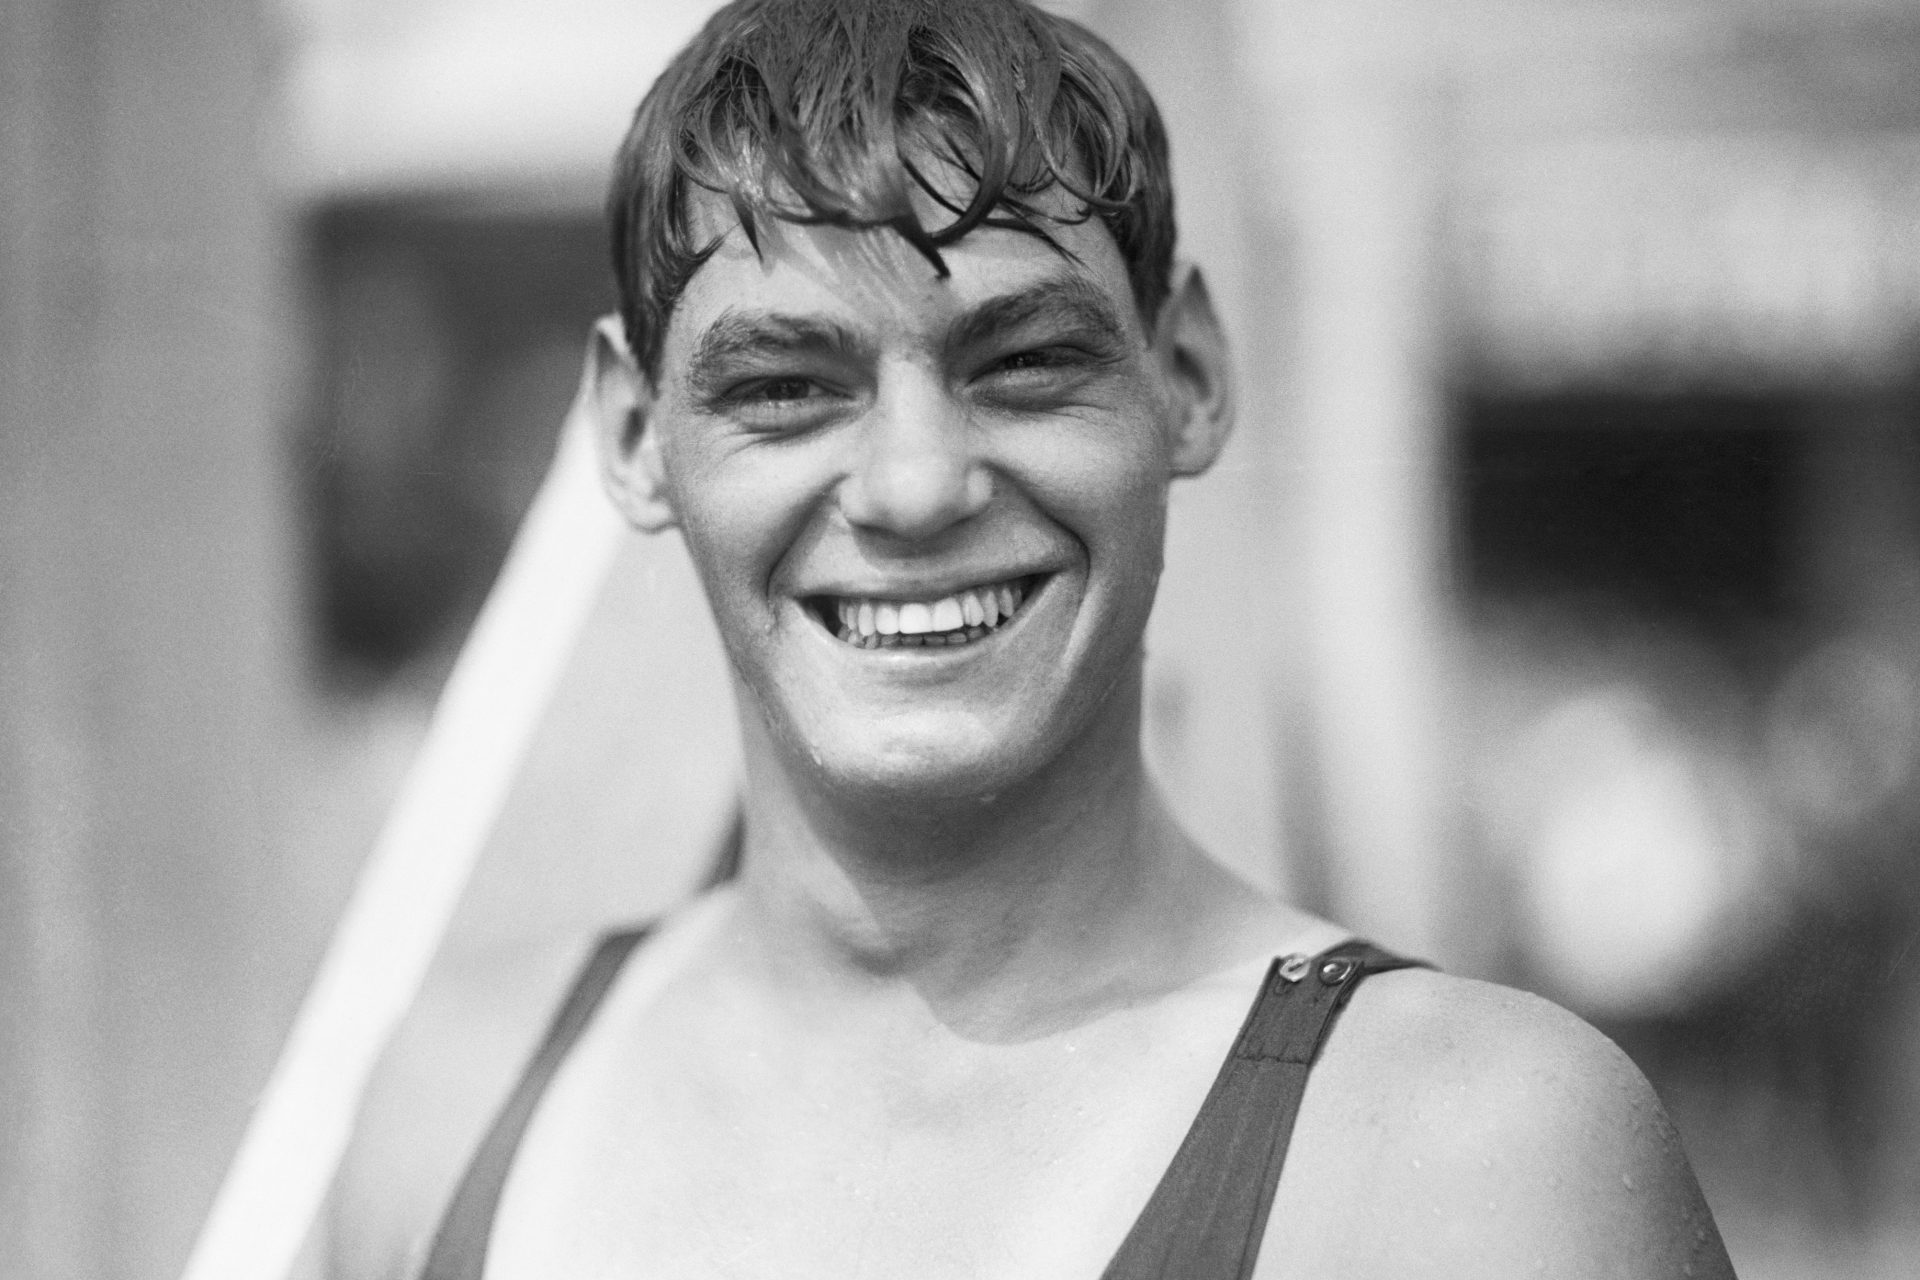 「ターザン」を演じた無敗の水泳選手、ジョニー・ワイズミュラーの世にも奇妙な人生